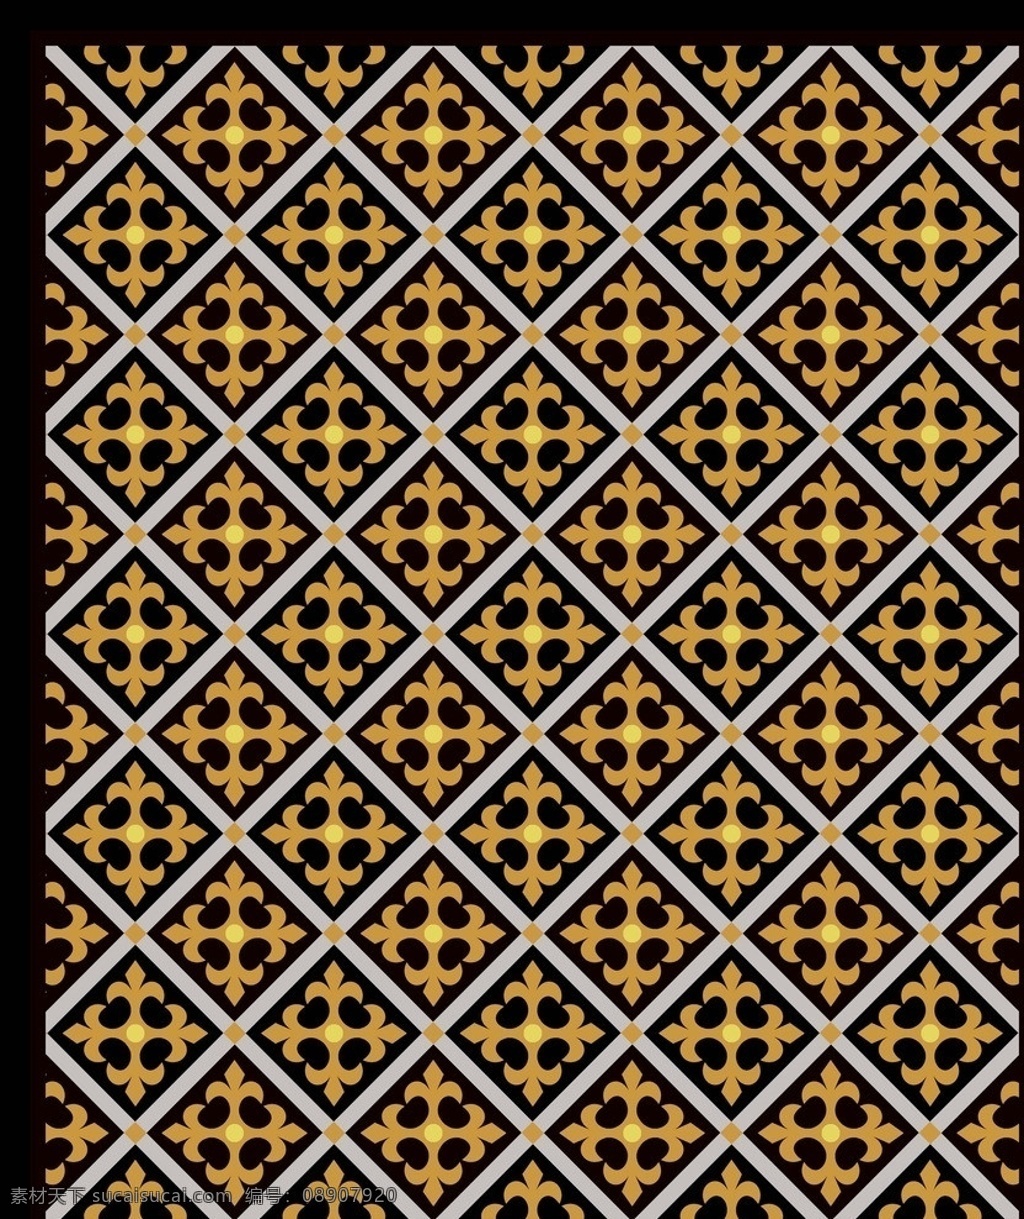 地毯花纹 现代 简约 欧式 美式 菱形 格子 圆点 地毯 花边花纹 底纹边框